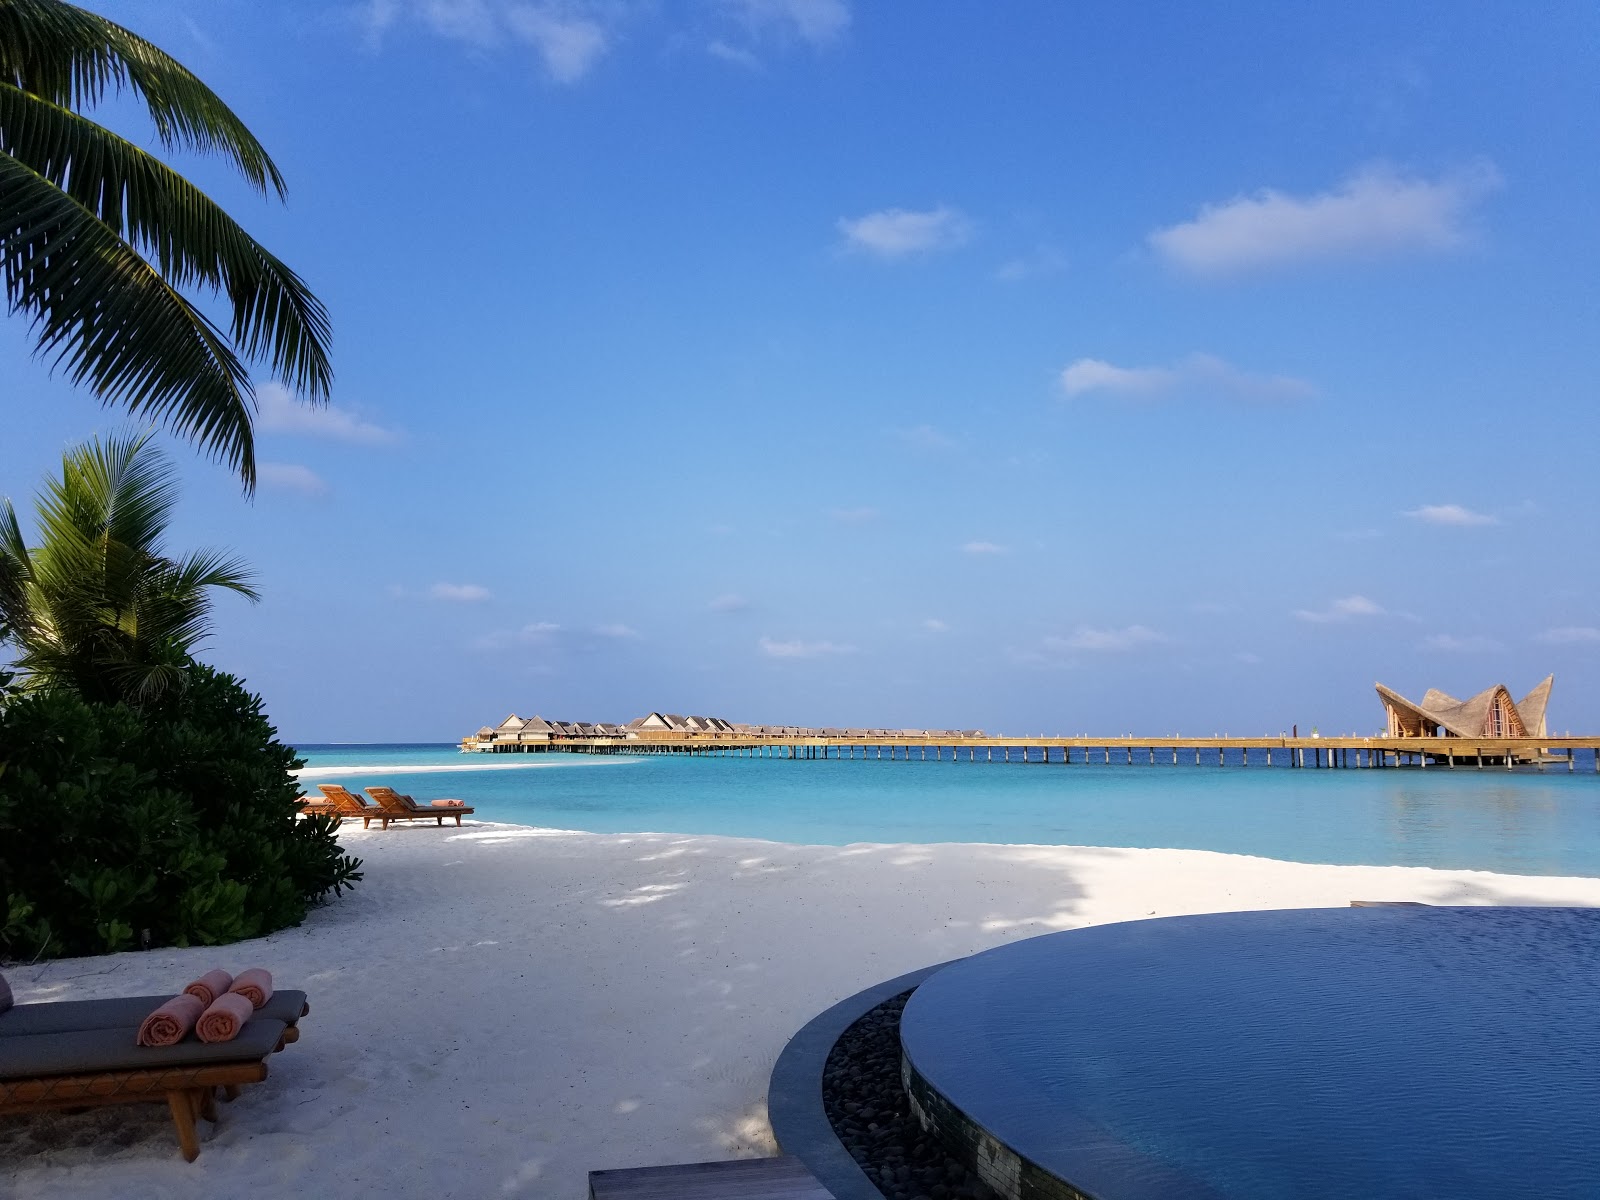 Foto de Joali Maldives - lugar popular entre los conocedores del relax